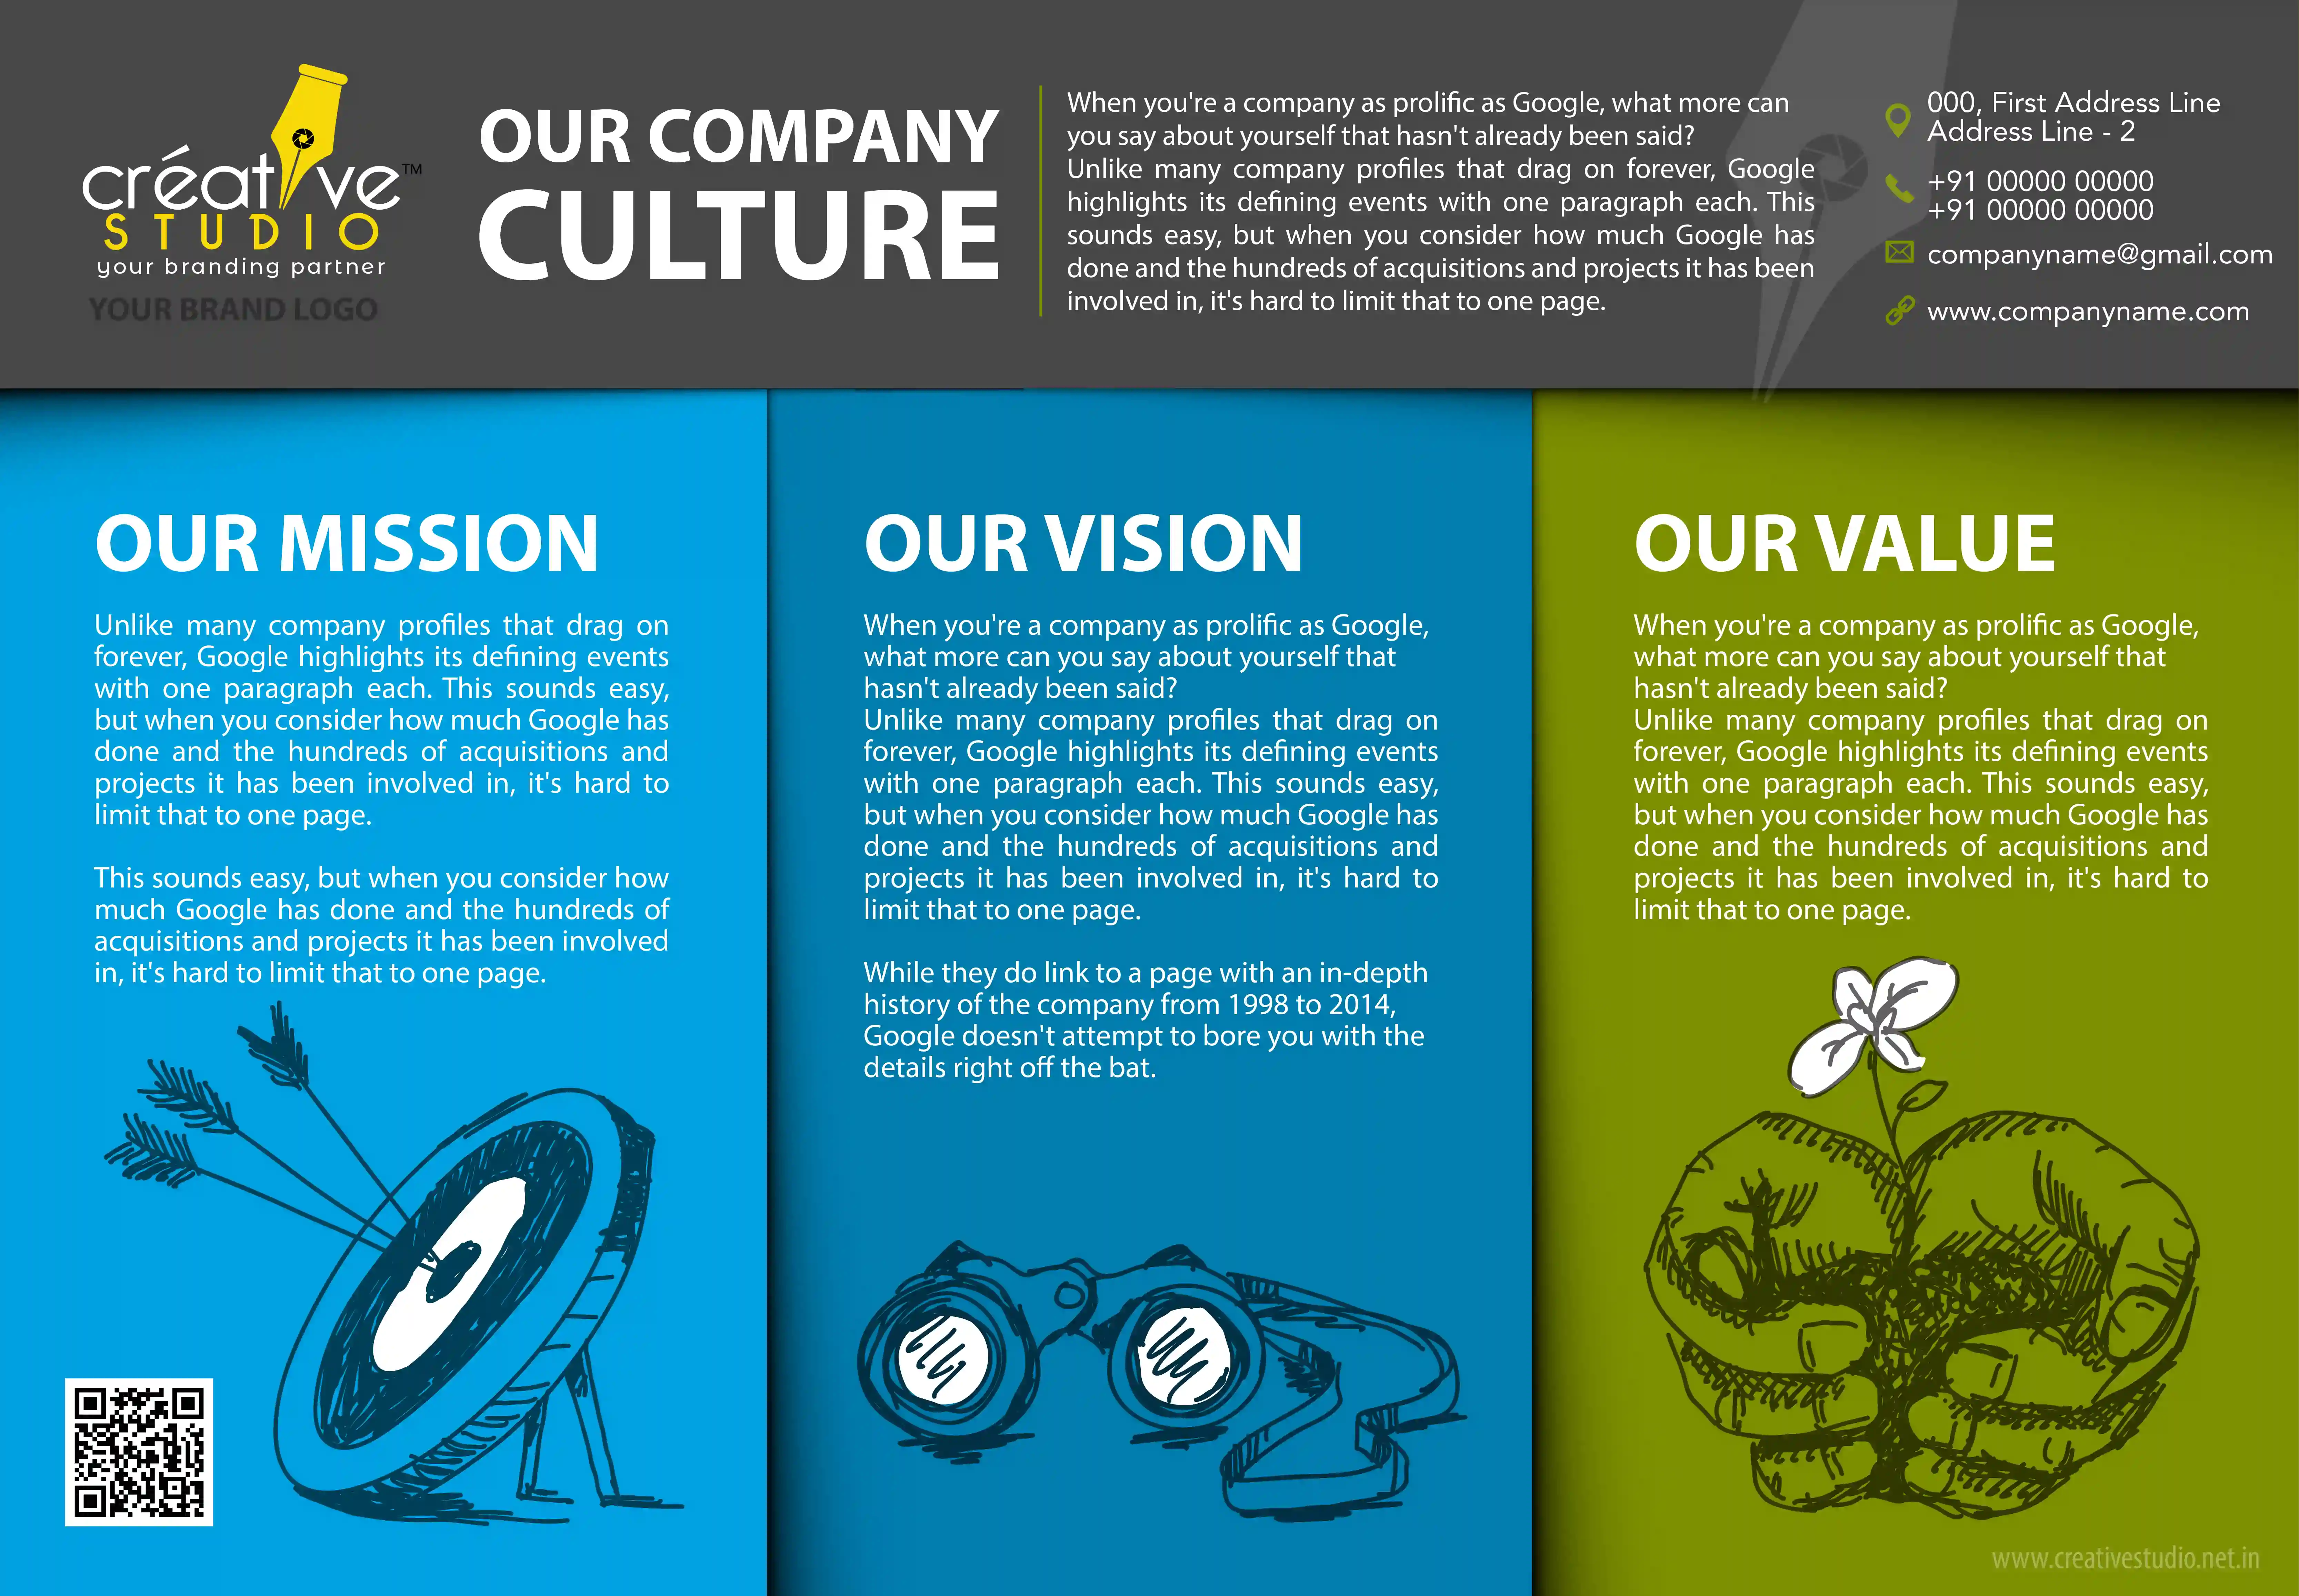 COMPANY PROFILE 01 01 - Company Profile Design Service by Creative Studio